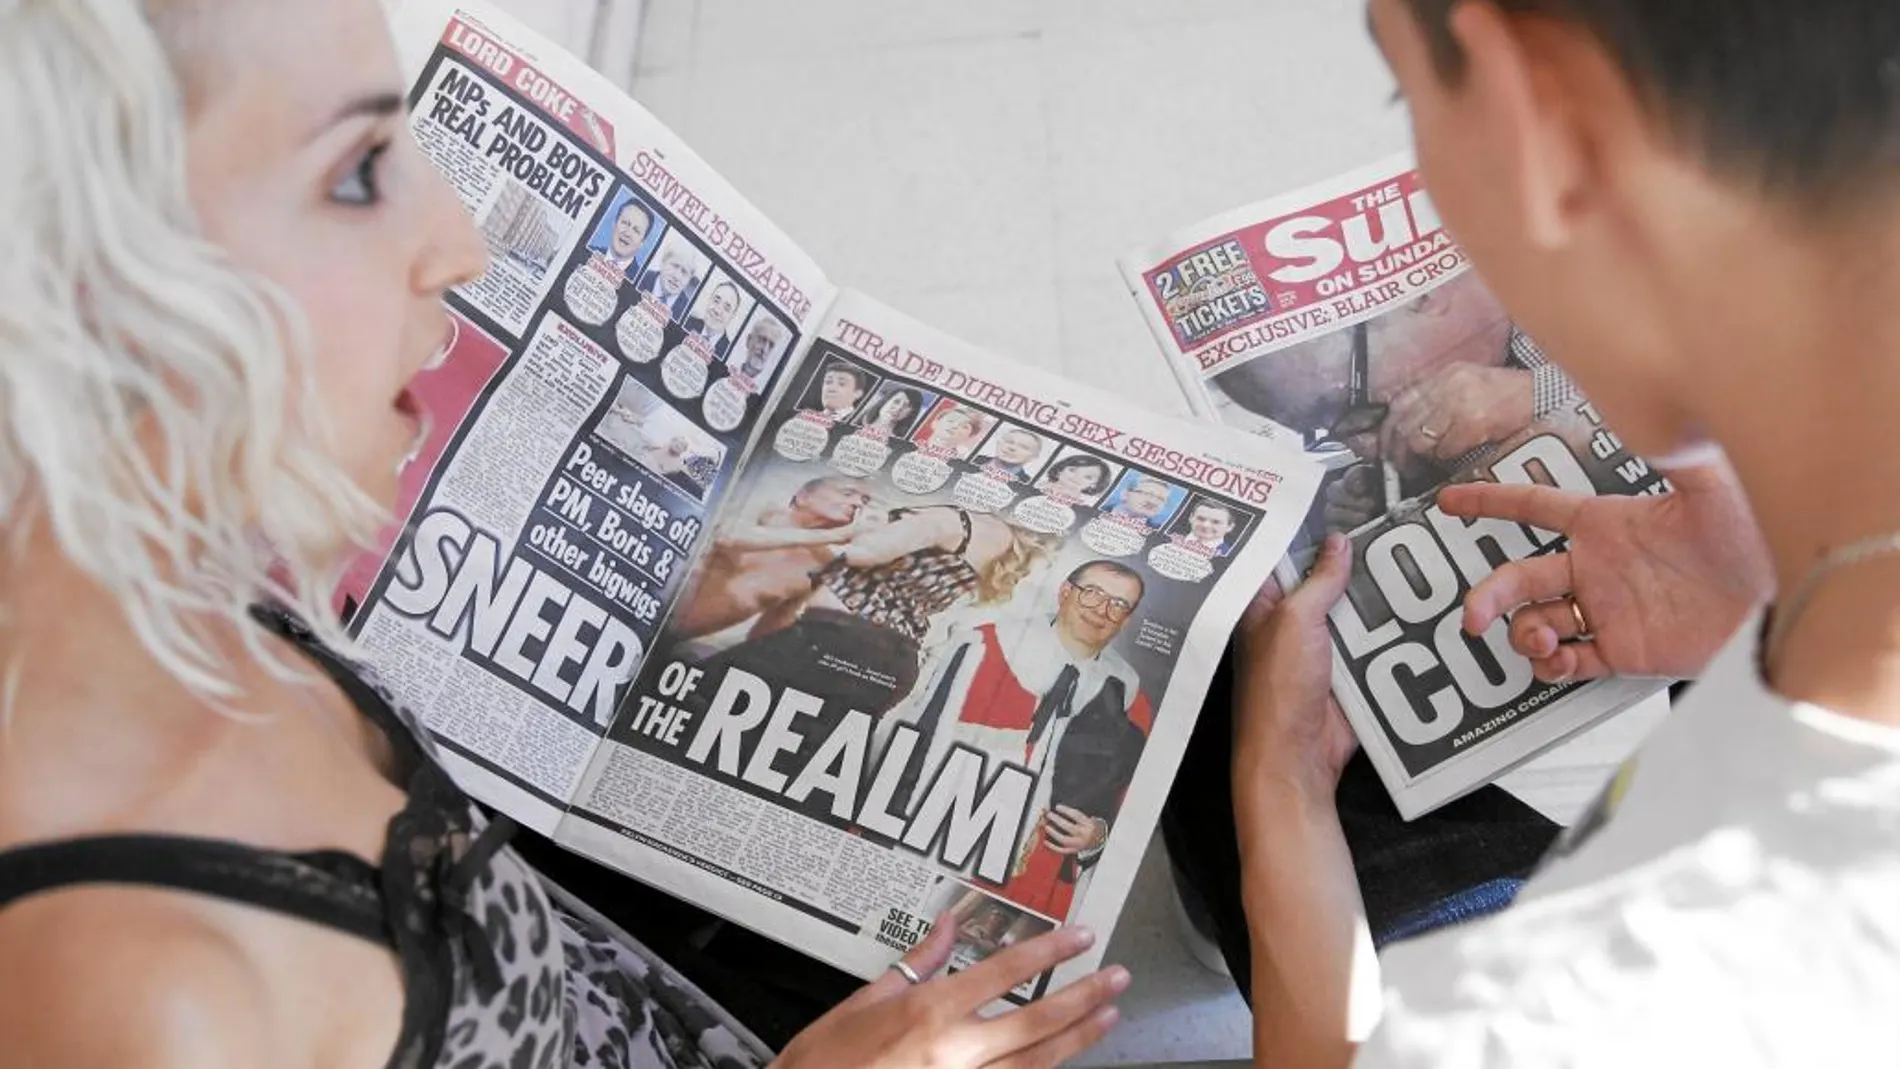 «The Sun» lleva dos días dando la información sobre Sewel en portada